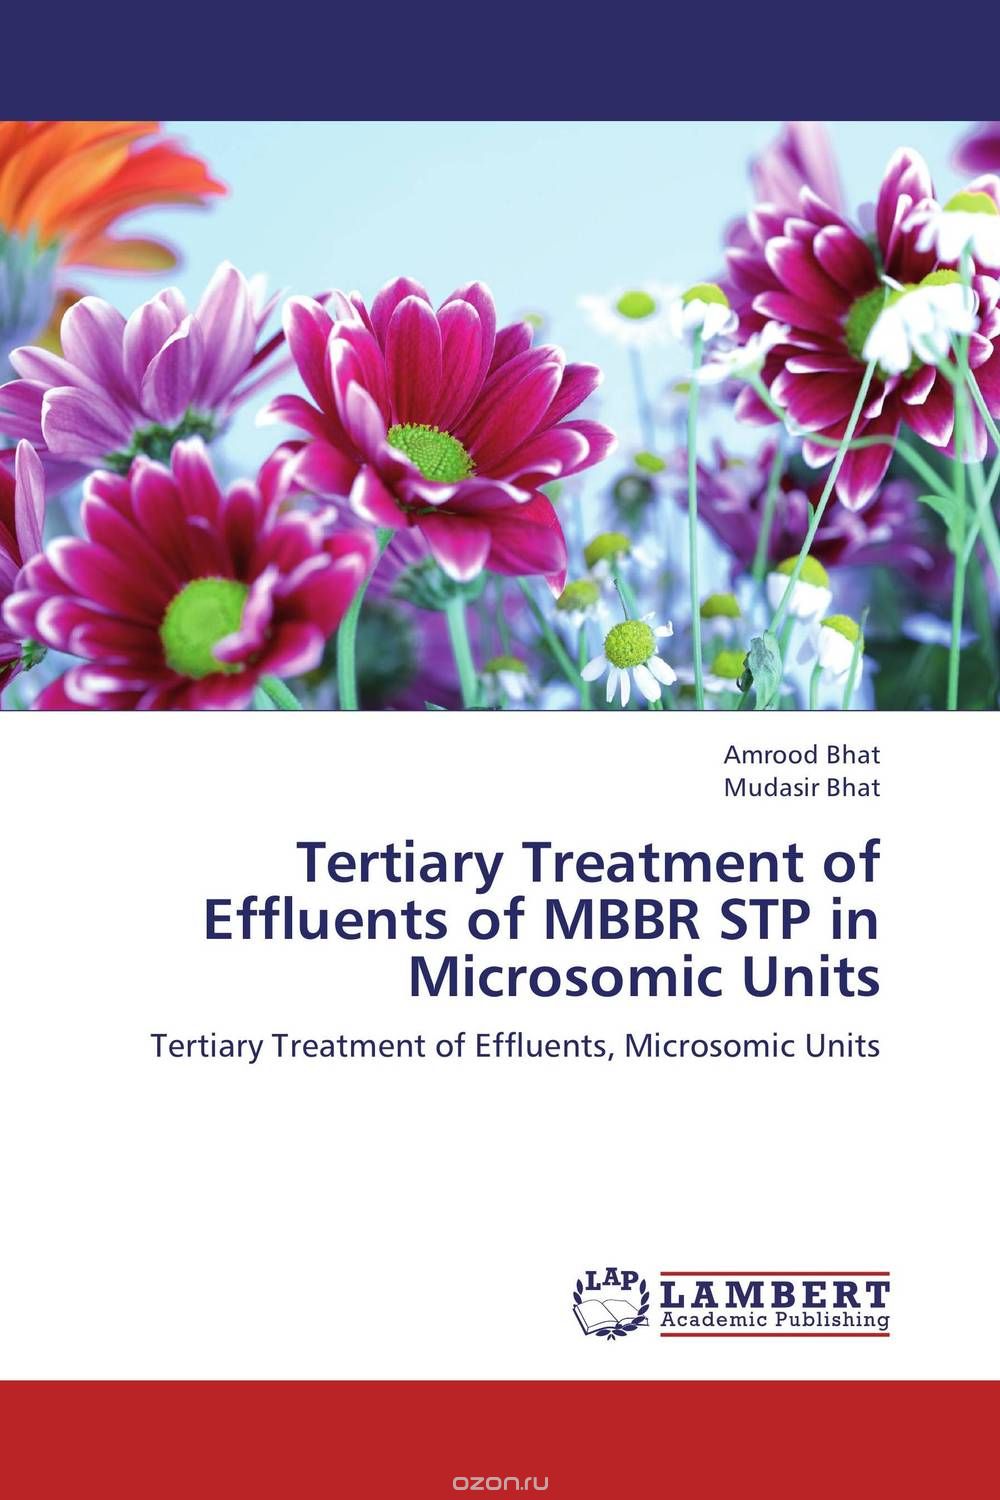 Скачать книгу "Tertiary Treatment of Effluents of MBBR STP in Microsomic Units"